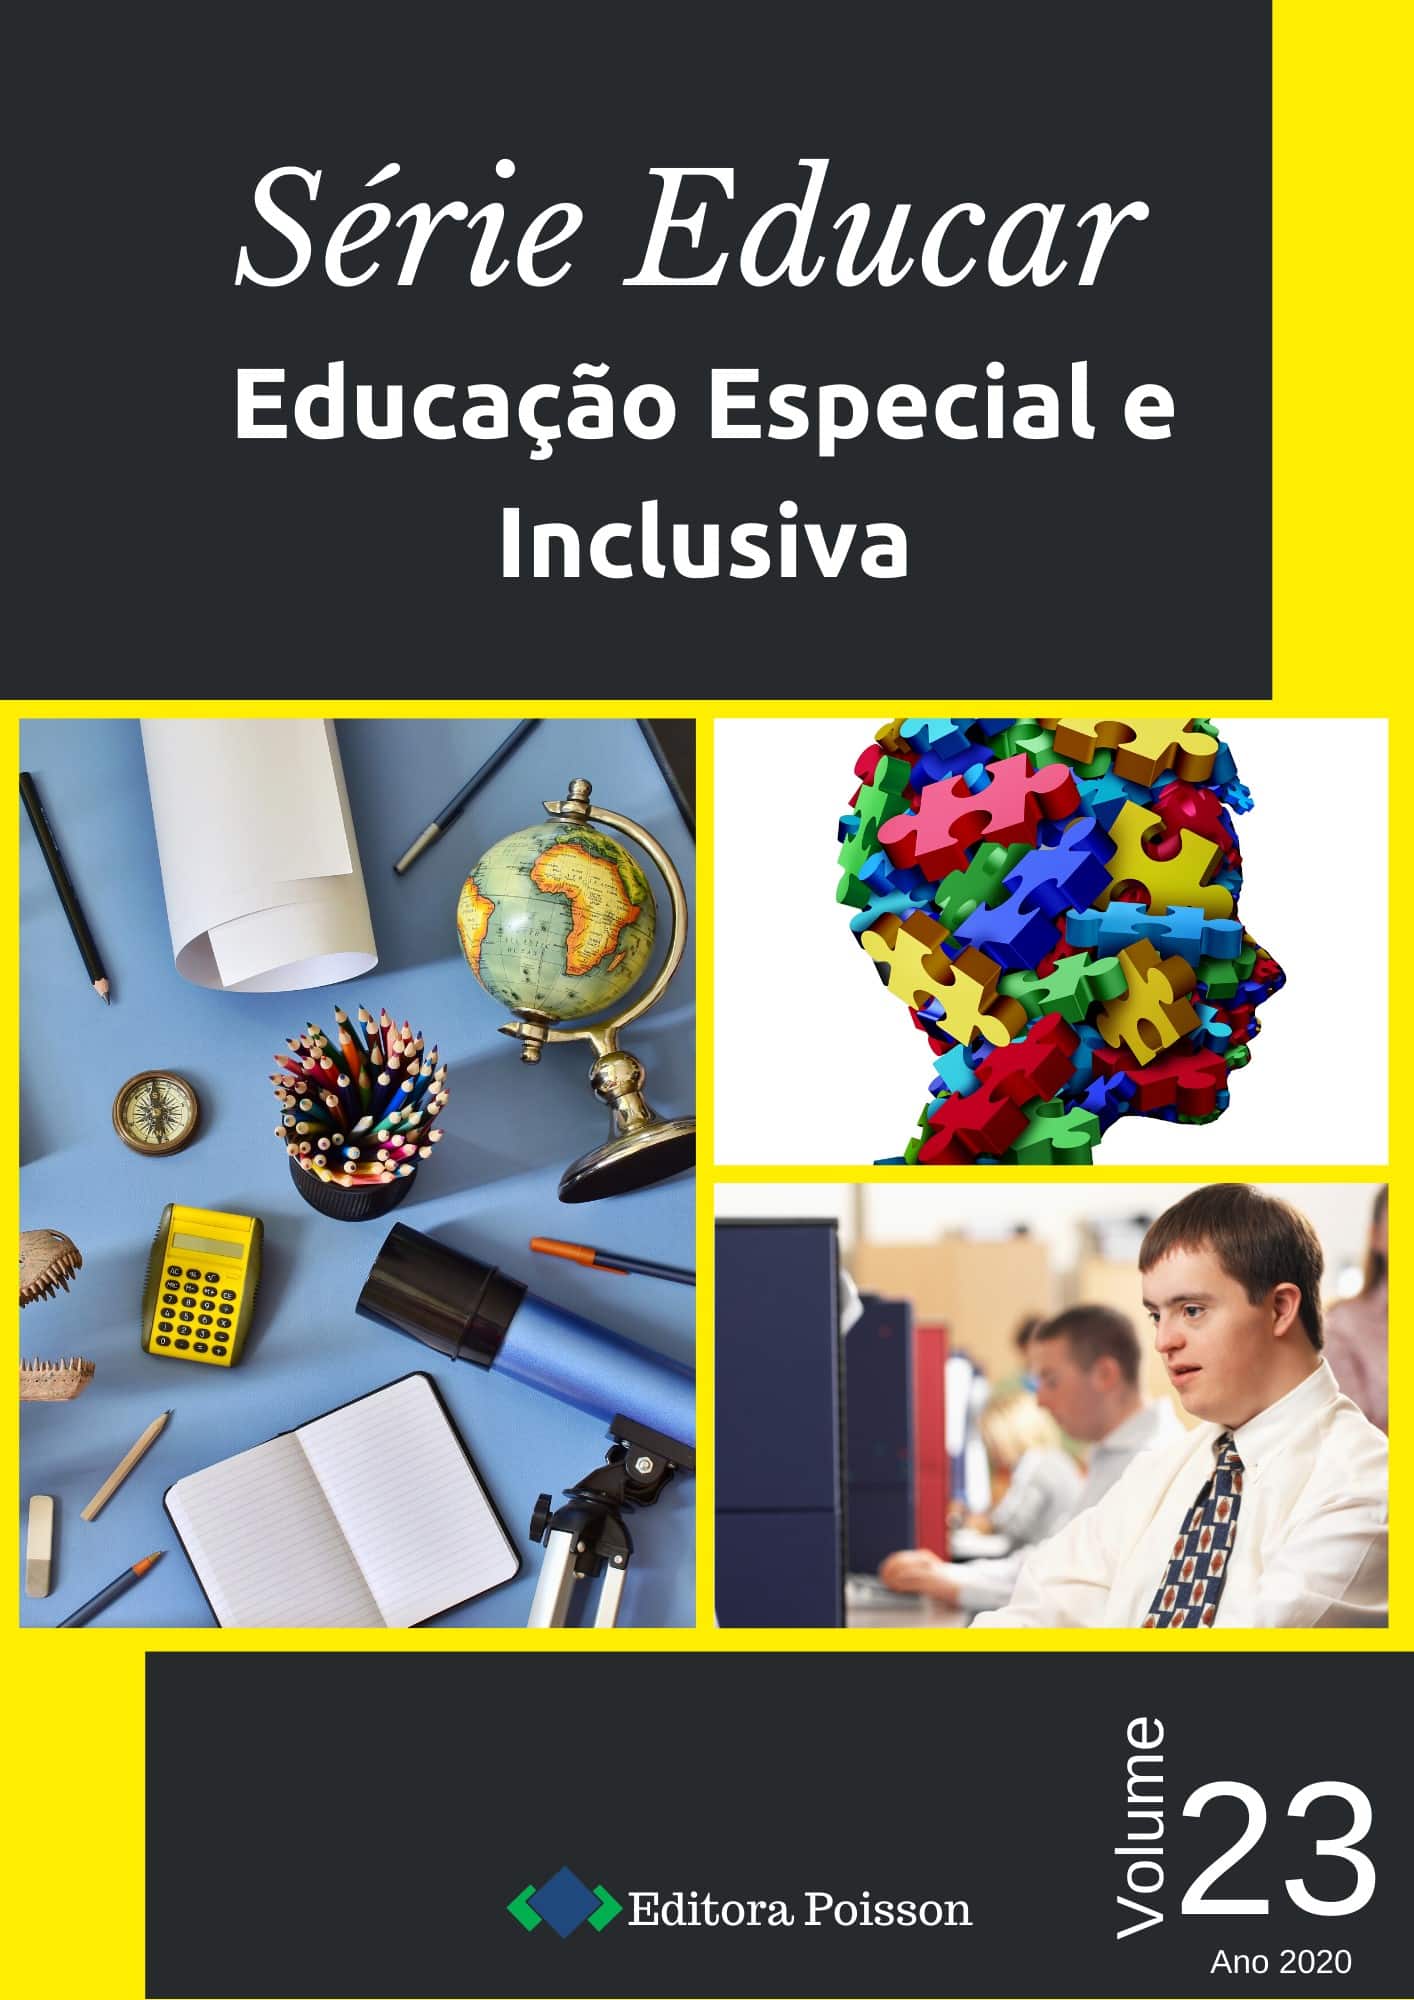 Spaço Educar: Educação Inclusiva  Educação fisica, Atividades de